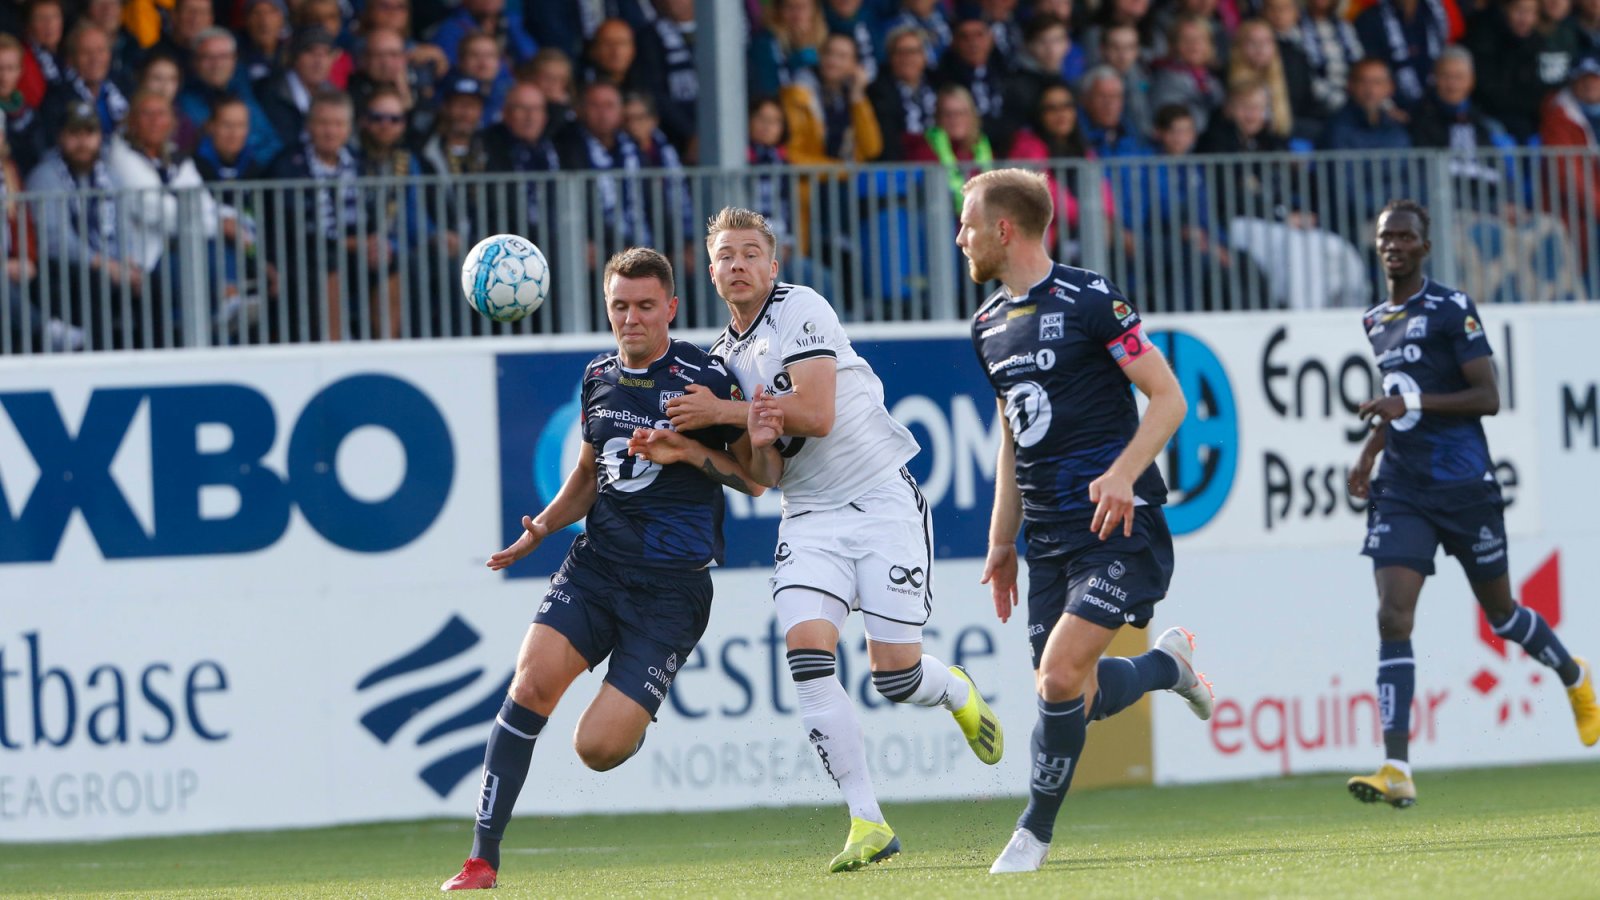 Billettsalg til kampen mot Rosenborg / Kristiansund